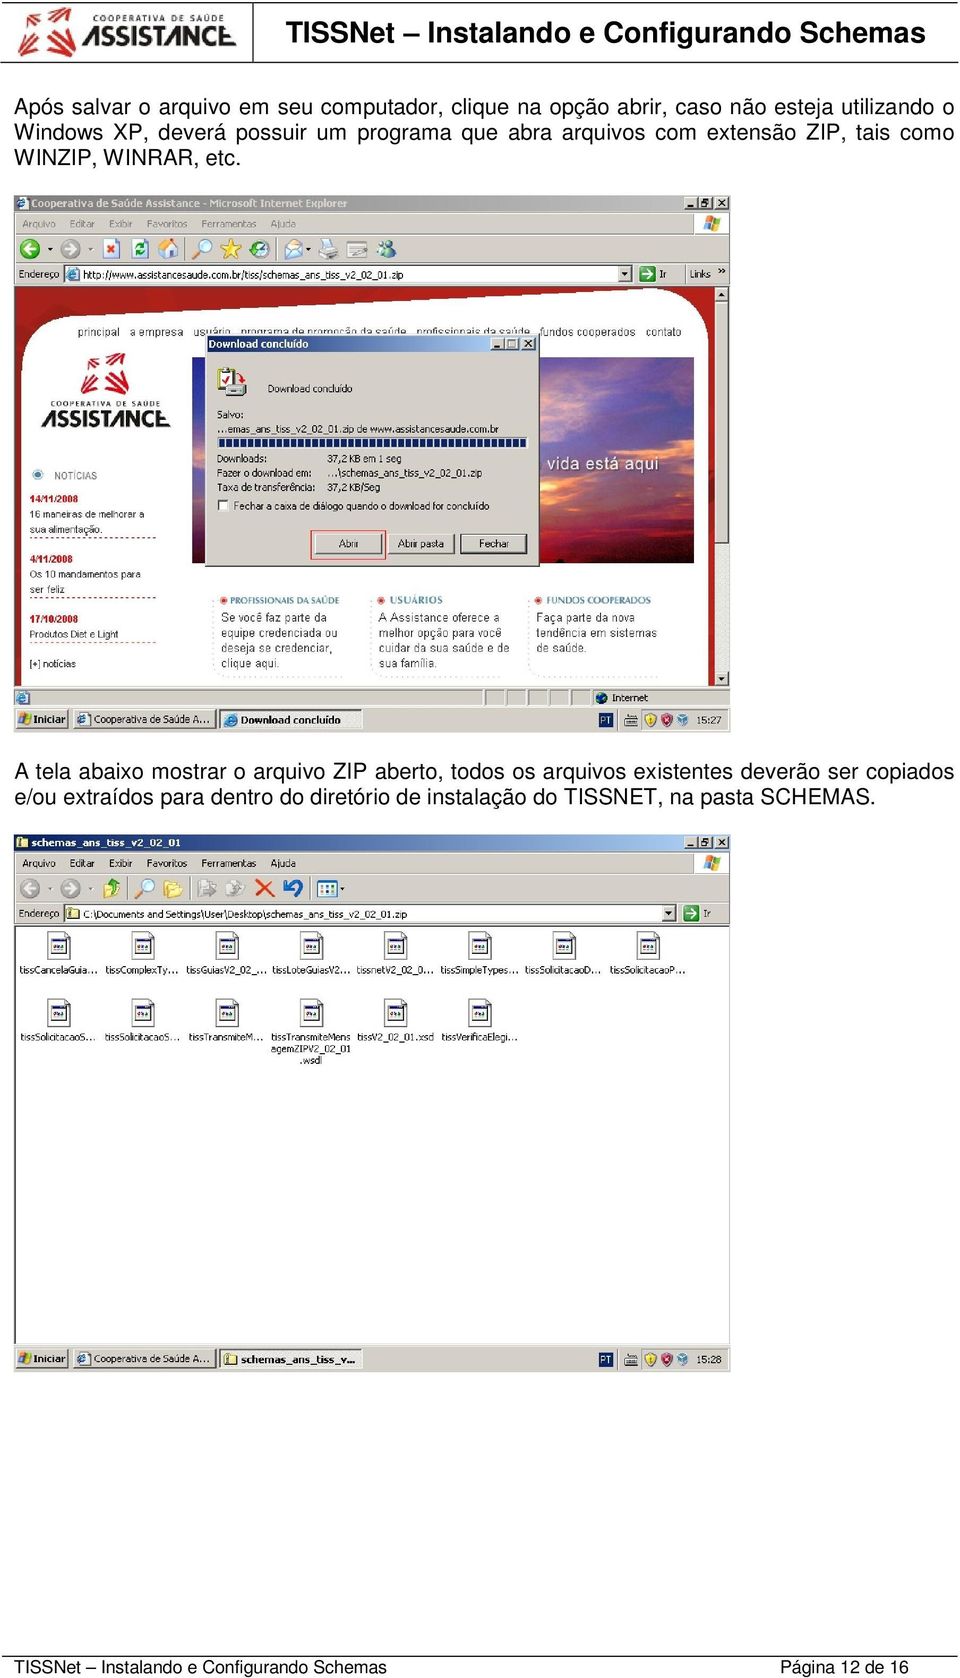 A tela abaixo mostrar o arquivo ZIP aberto, todos os arquivos existentes deverão ser copiados e/ou extraídos